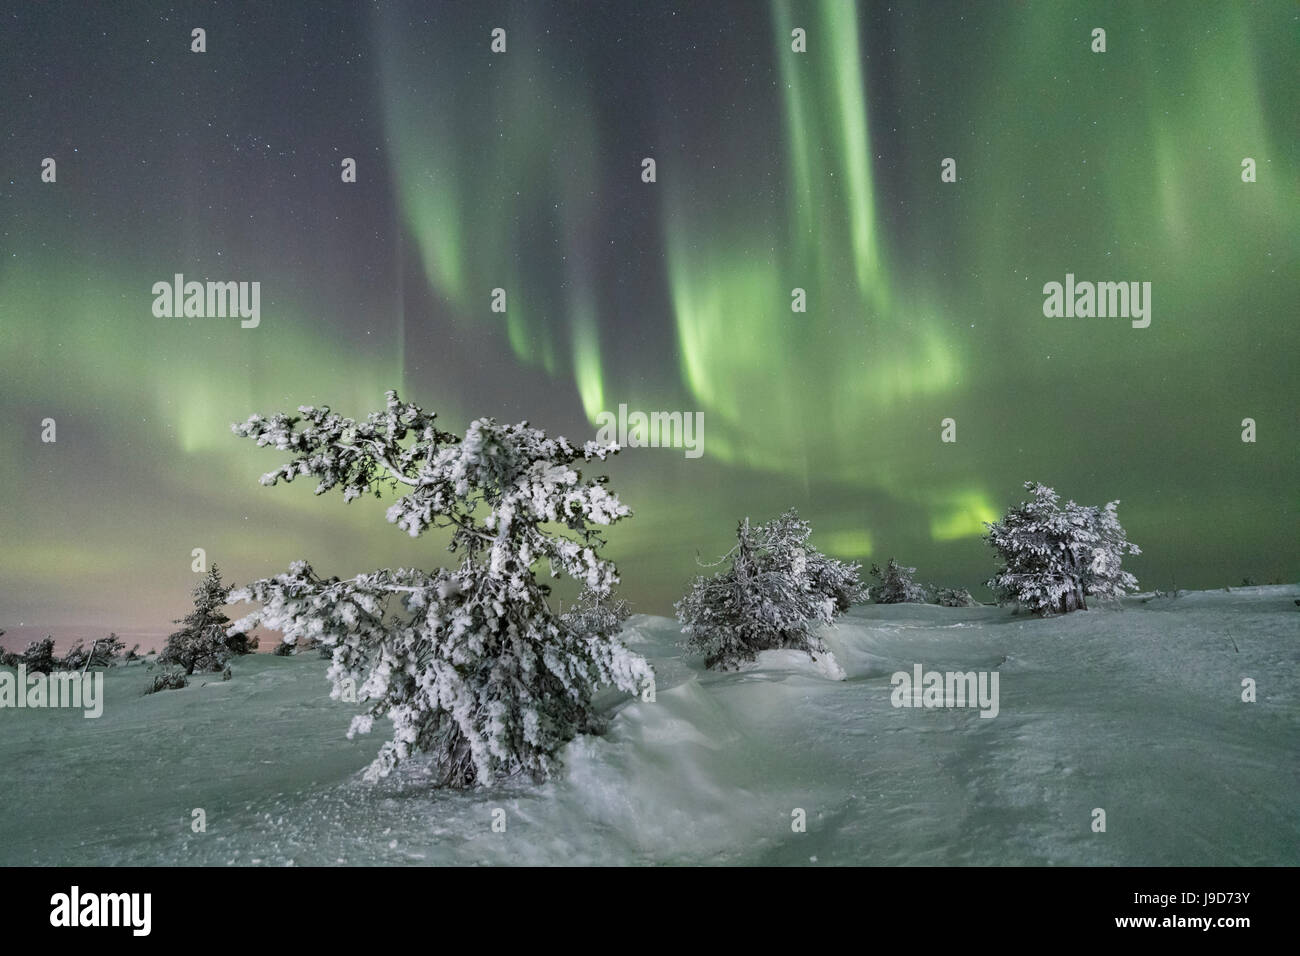 Northern Lights (Aurora Borealis) on the frozen trees in the snowy woods, Levi, Sirkka, Kittila, Lapland region, Finland, Europe Stock Photo